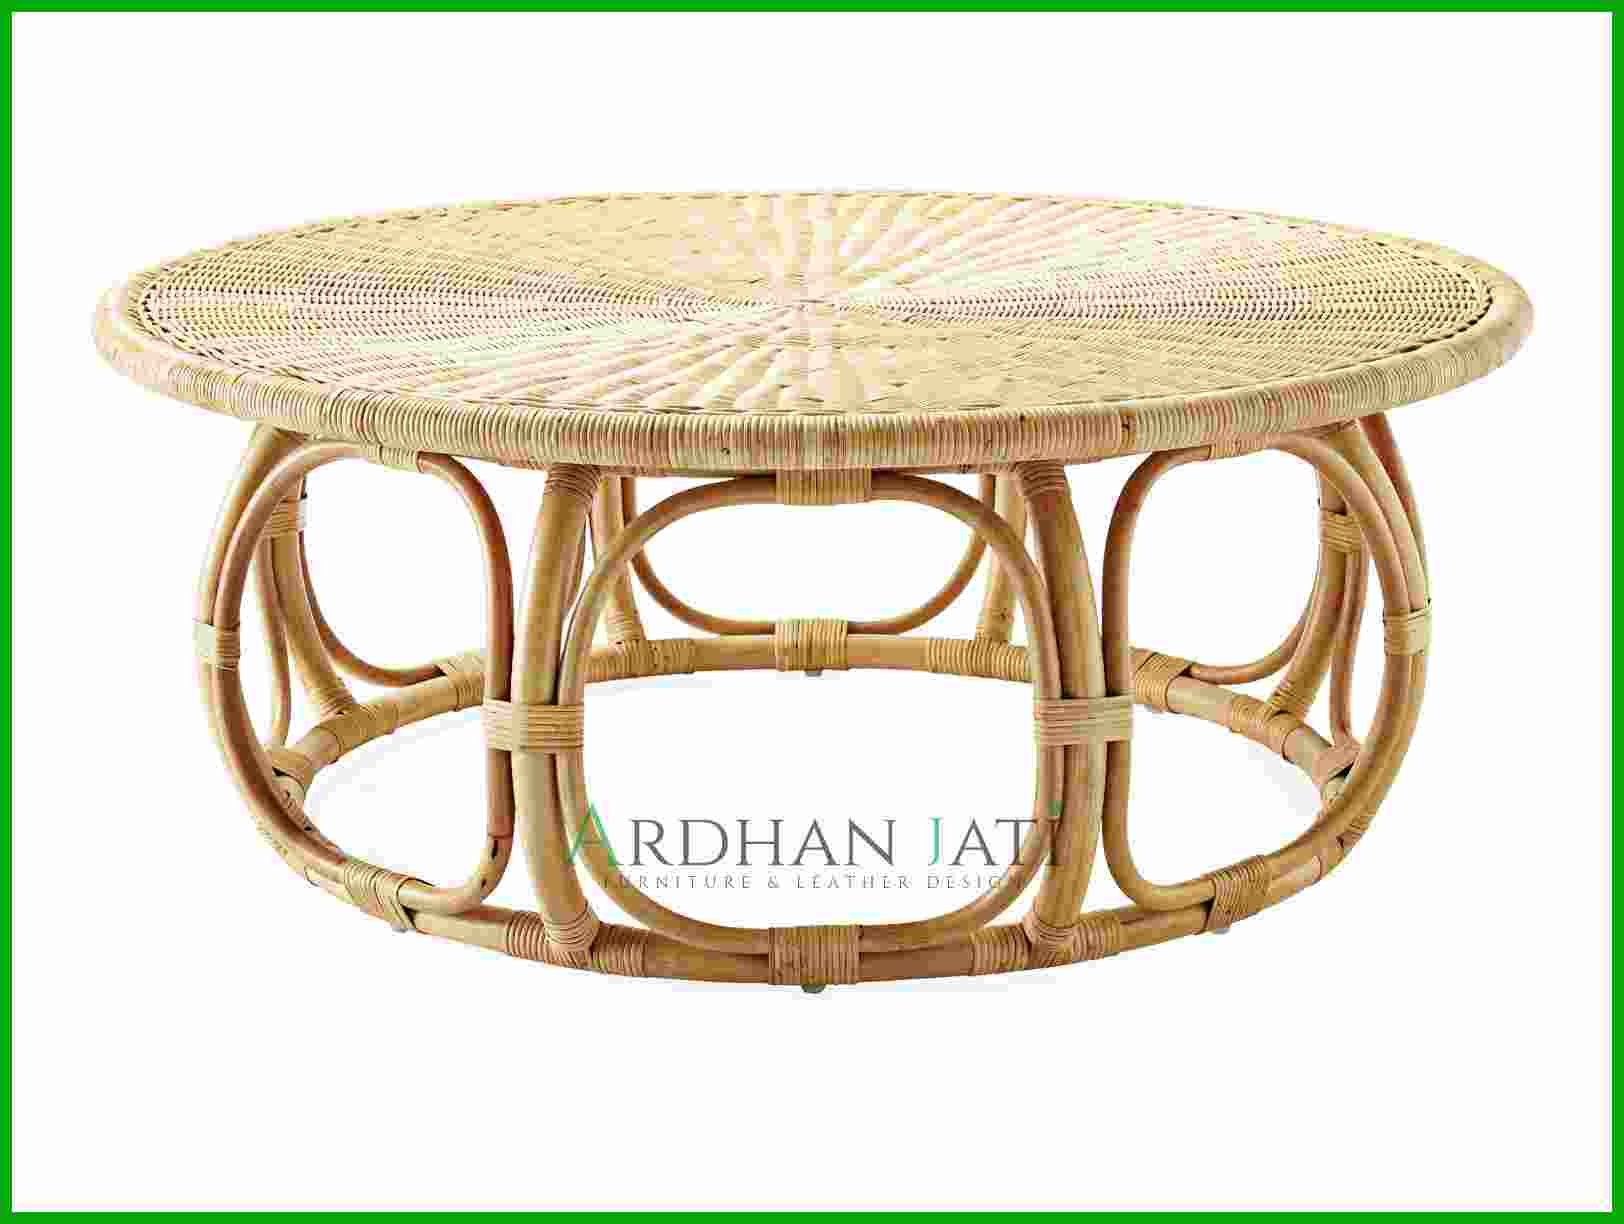 Rattan Furniture Indoor Outdoor Manufacturer